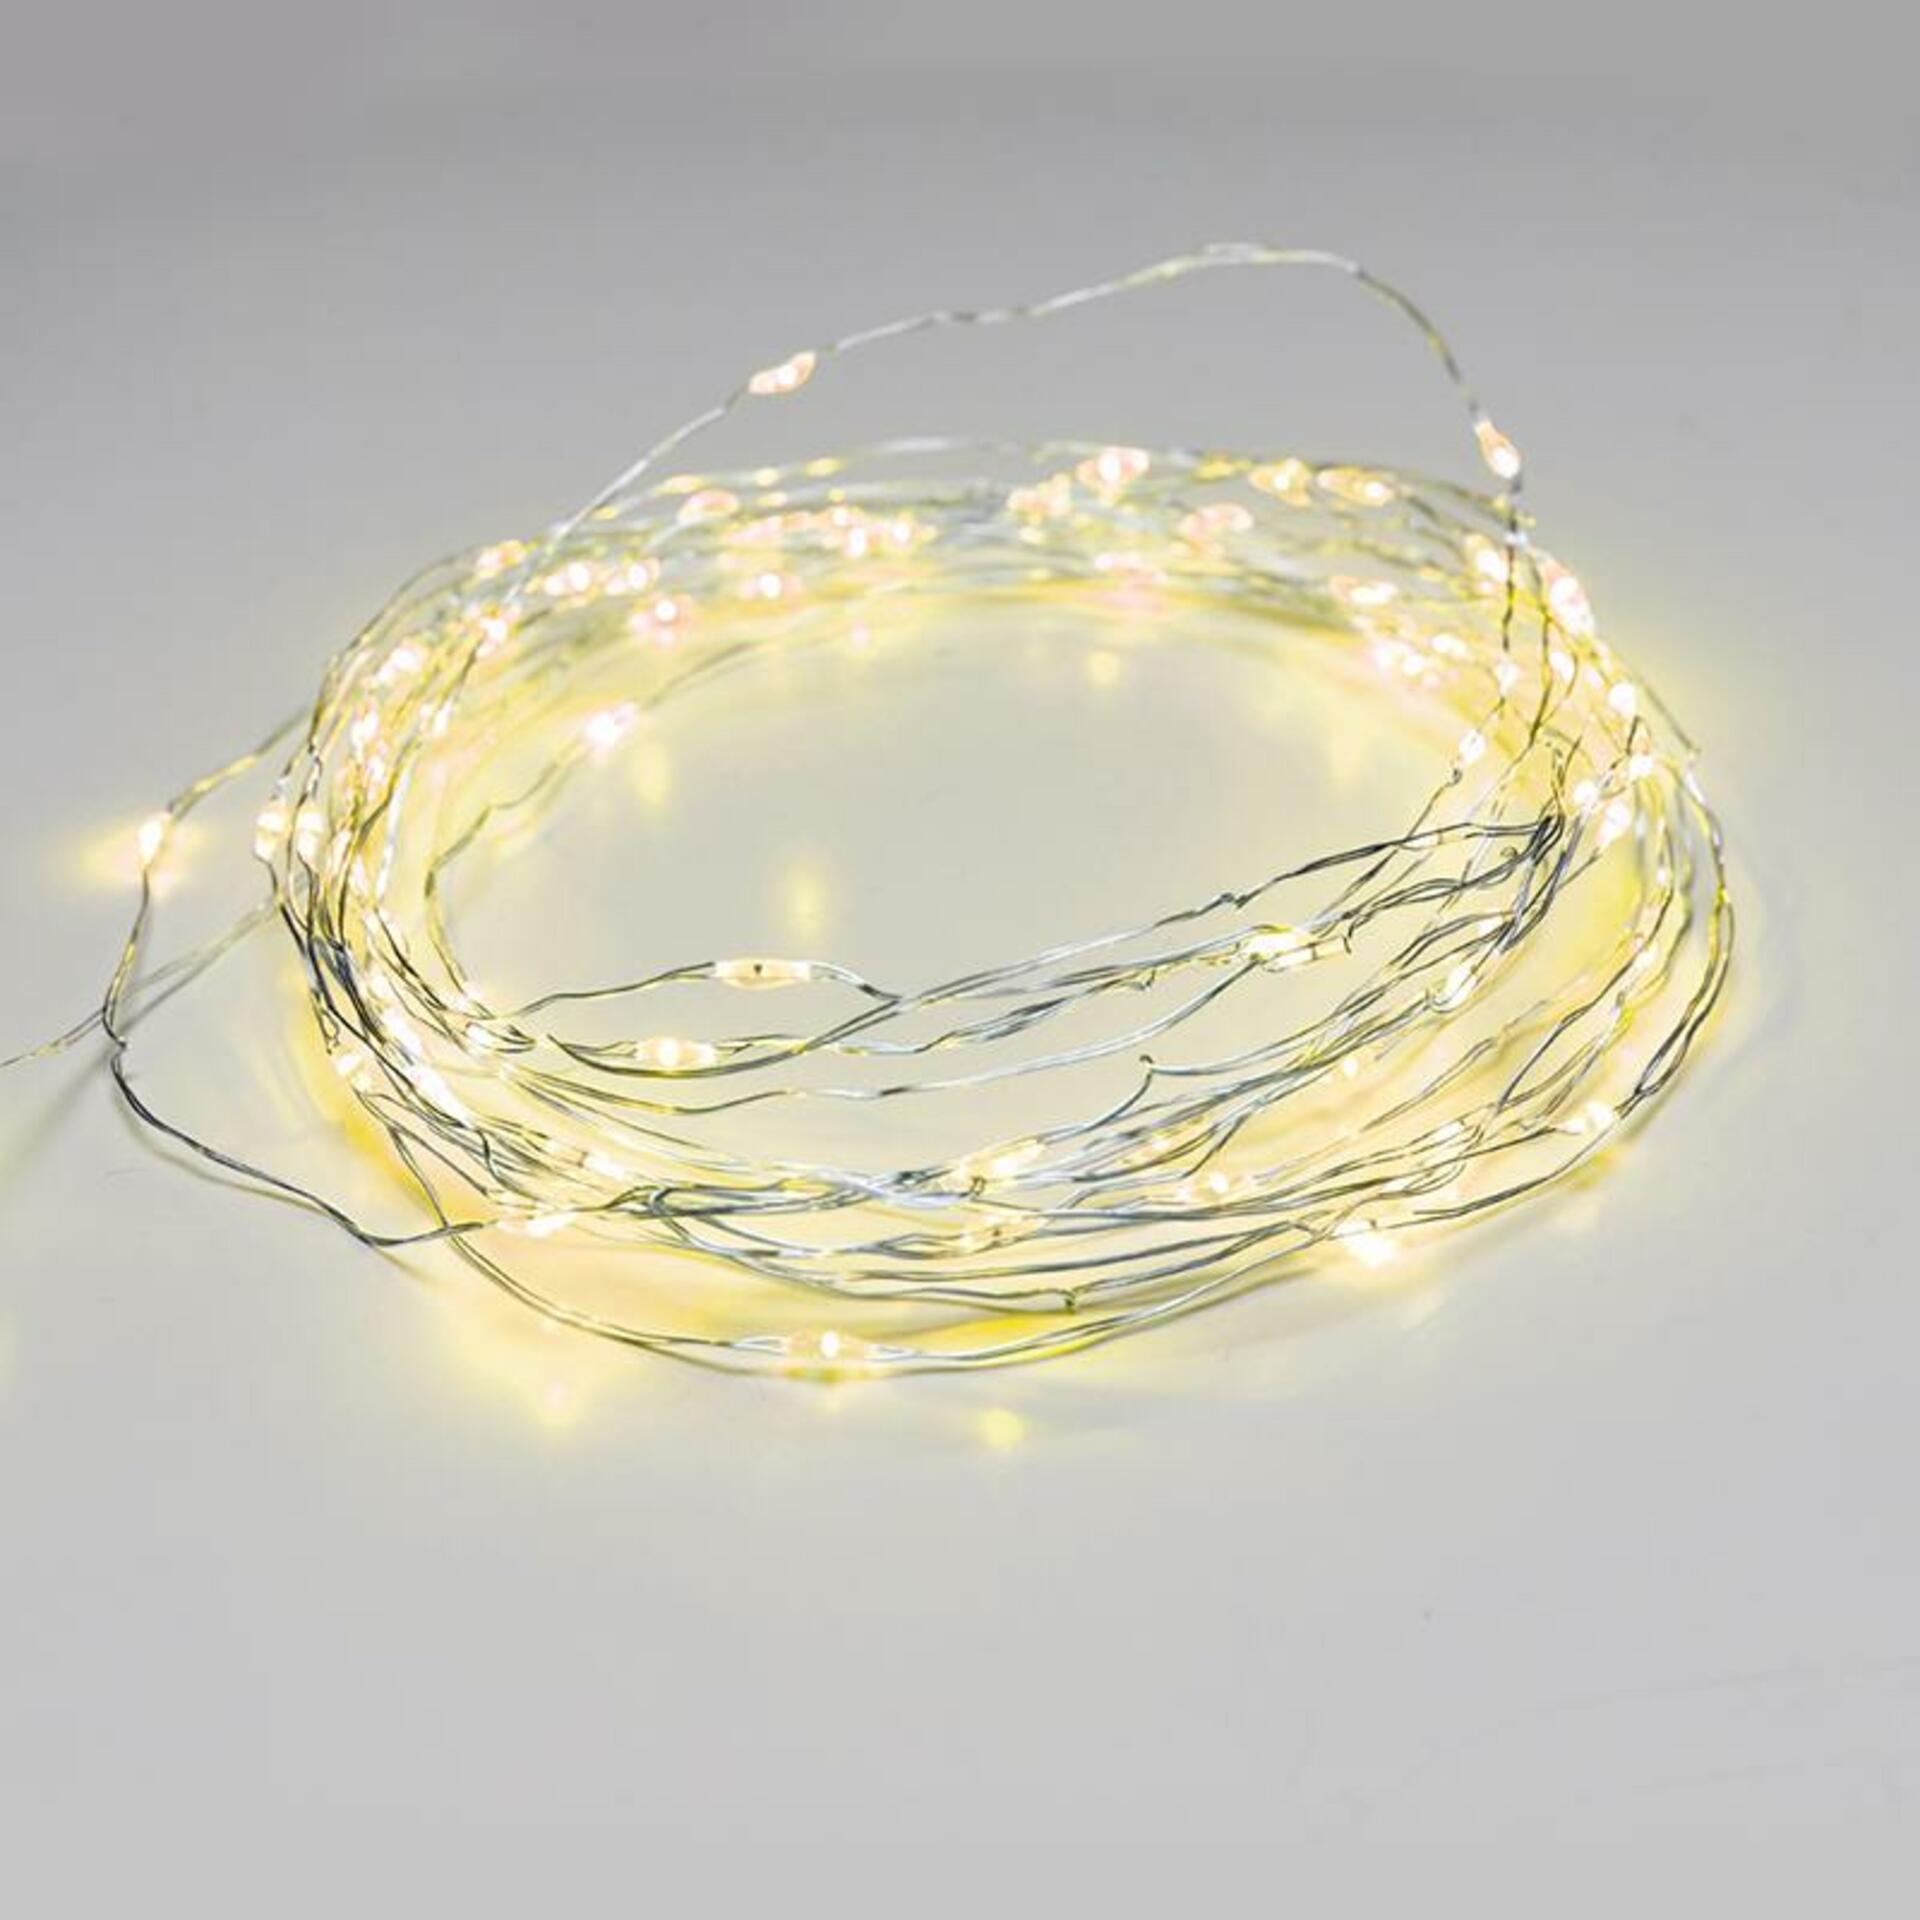 ACA Lighting 100 LED dekorační řetěz žlutá stříbrný měďený kabel 220-240V + 8 funkcí IP44 10m+3m 1.8W X01100712